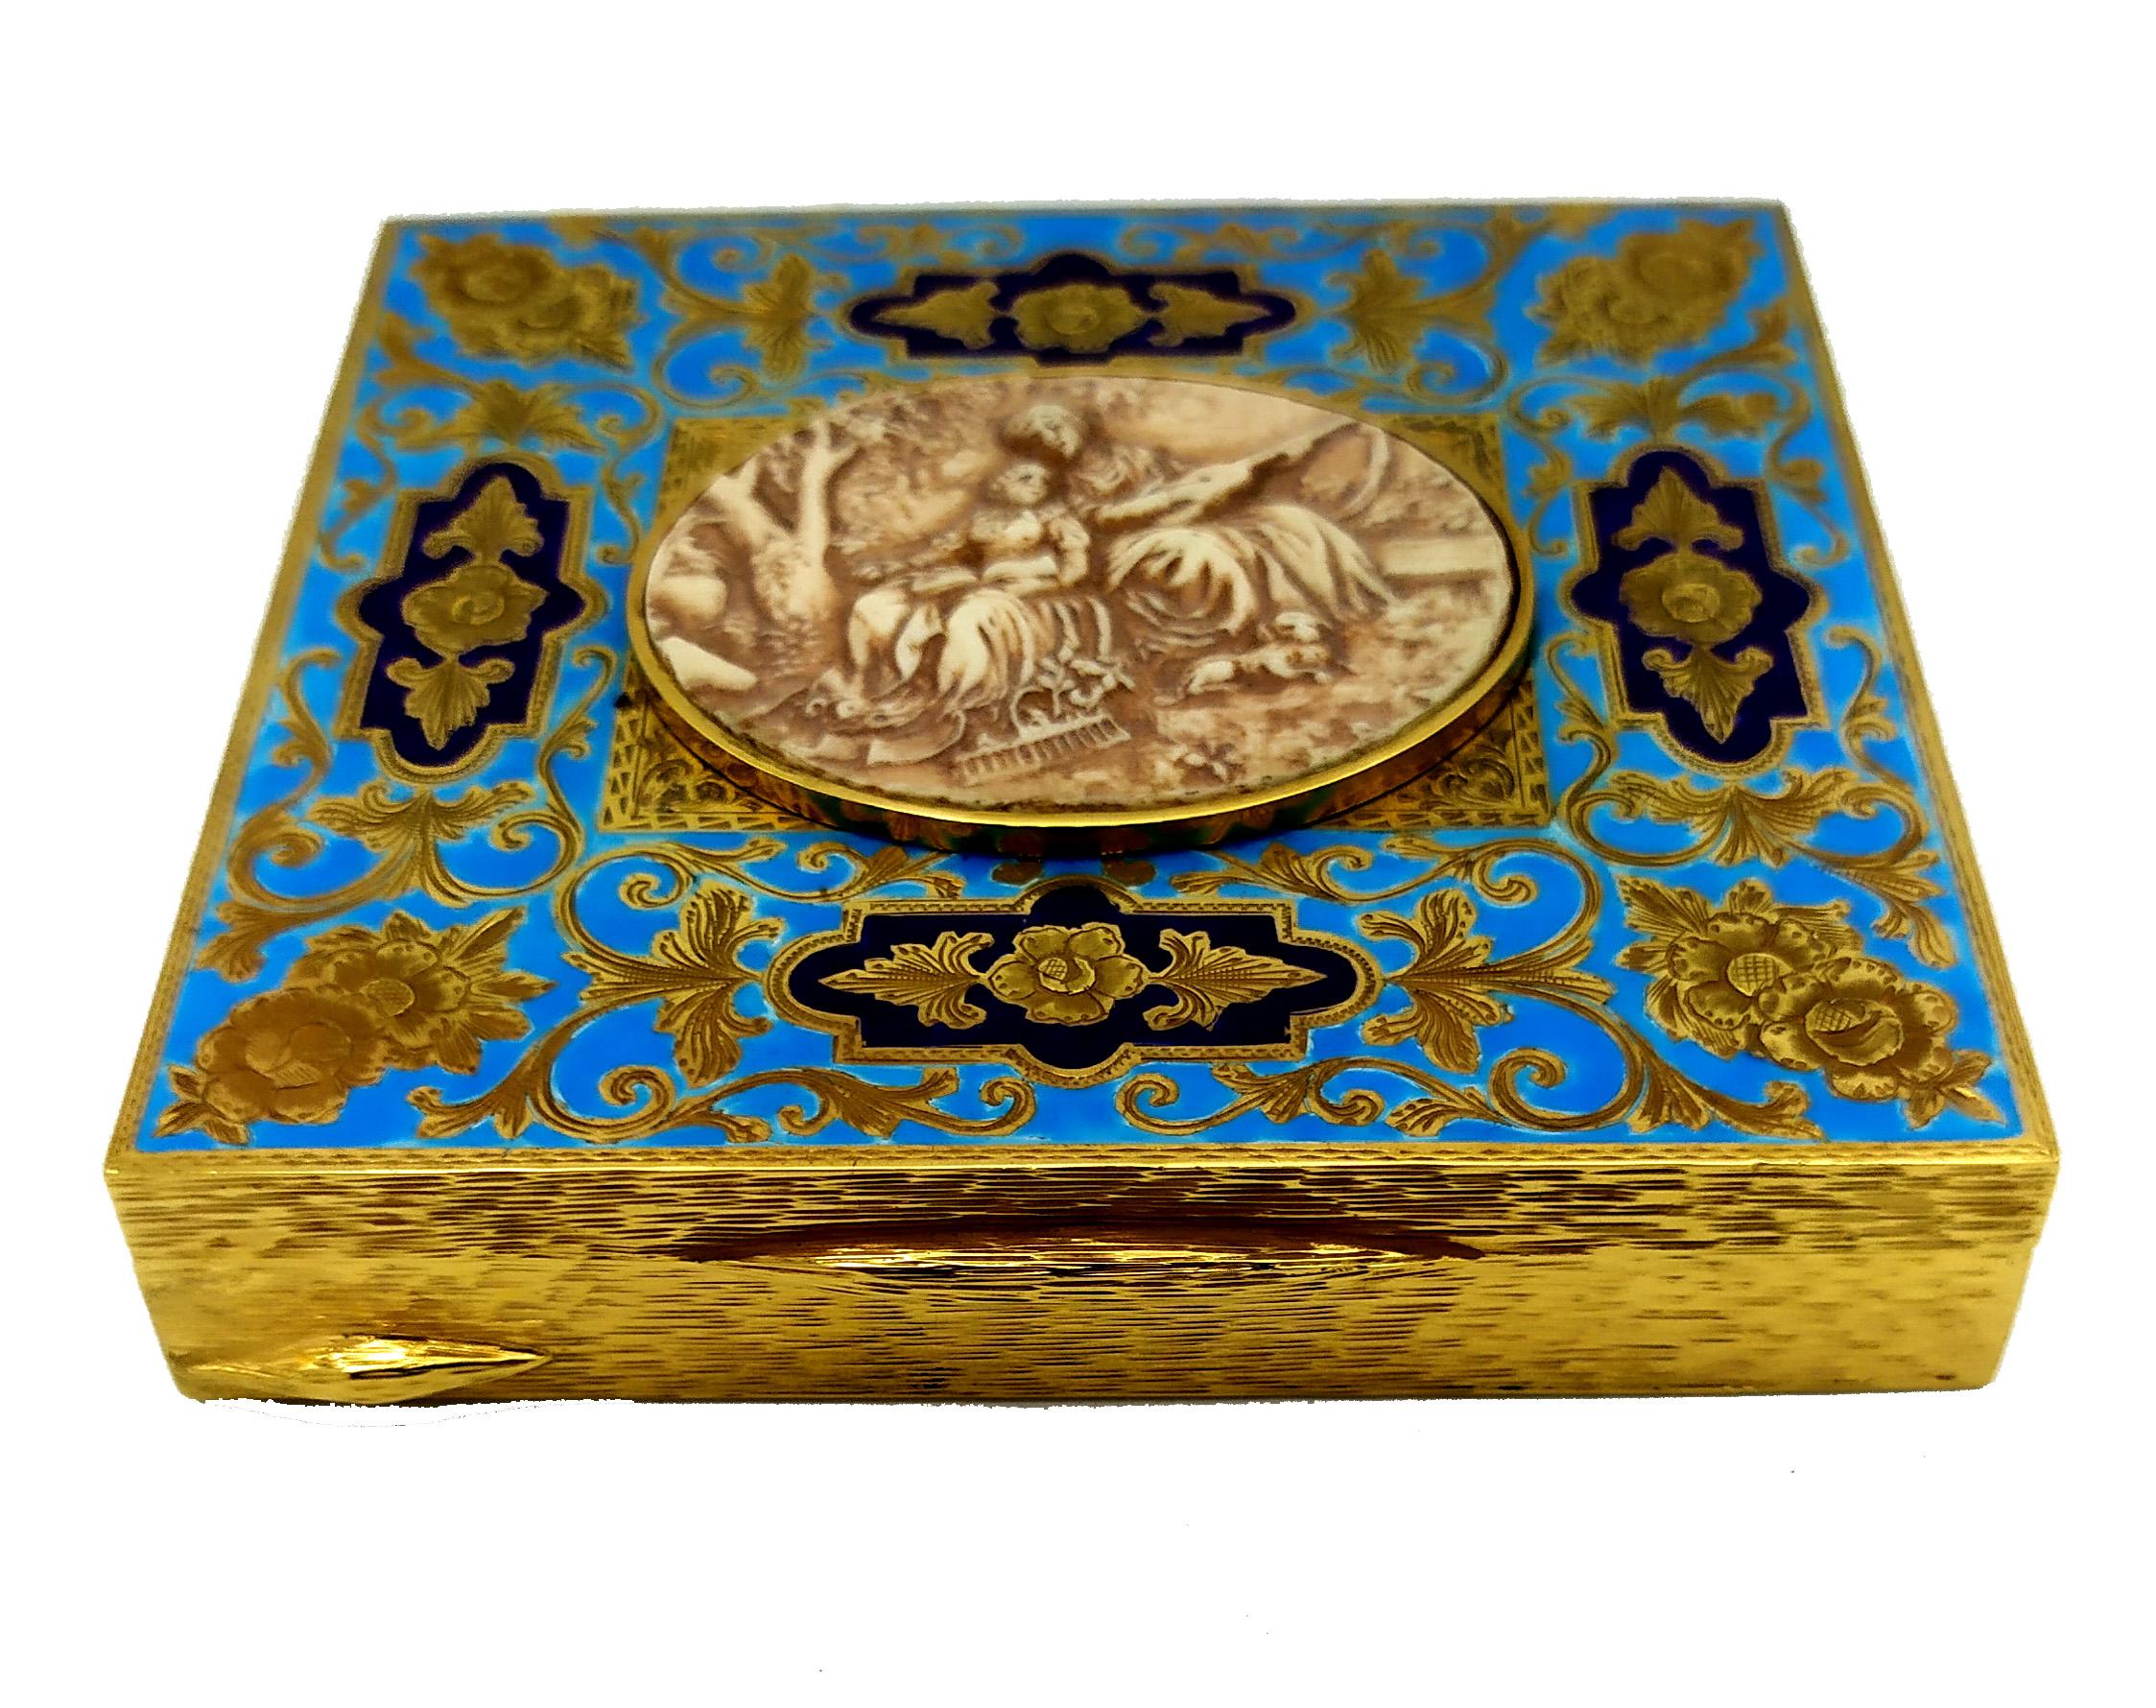 Boîte de table rectangulaire en argent sterling  Plaqué or 925/1000 avec une très belle gravure à la main de style baroque sur le couvercle, émaillé au feu en 2 couleurs. Au centre, une ancienne plaque ovale de cm. 4 x 4,8, sculptée à la main,